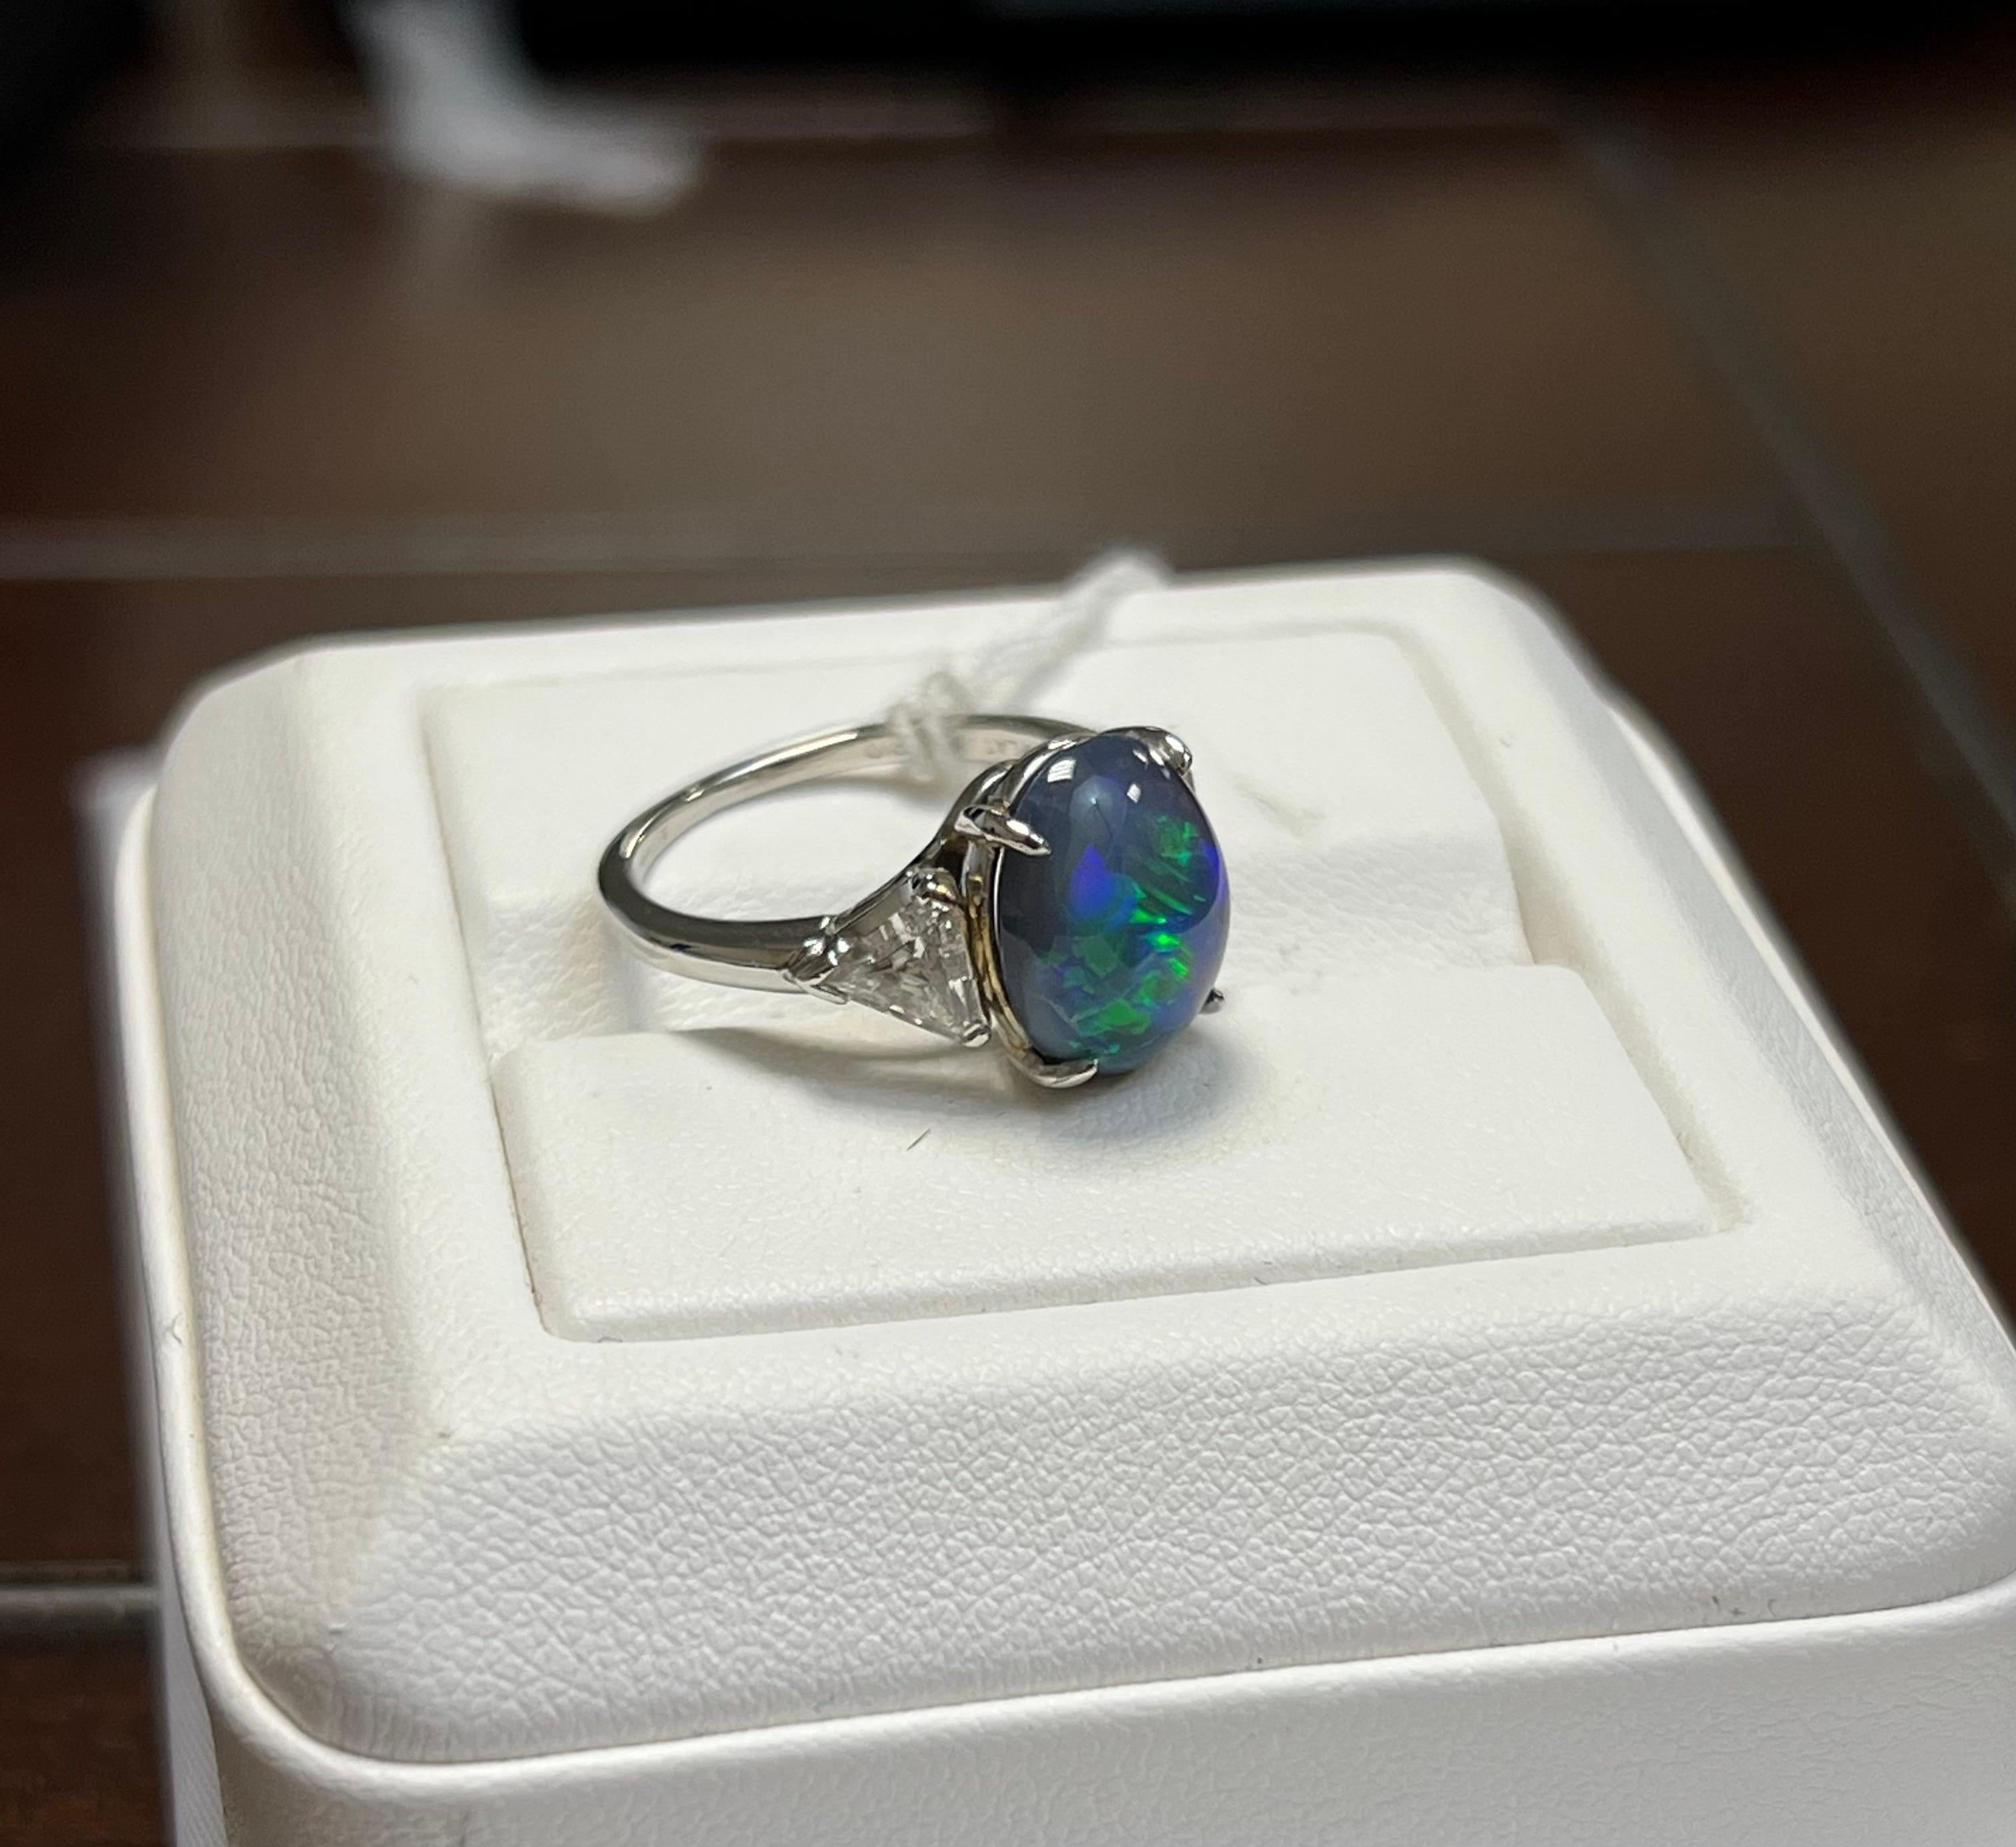 L'opale noire d'une dame en couleur bleu-vert de feu. Échelle de saturation vive avec motif de feu flash. L'éclat du feu est très brillant avec le cabochon, de forme ovale. Deux diamants taillés en forme de trillion mesurant 5,0 x 5,25 mm. Le poids